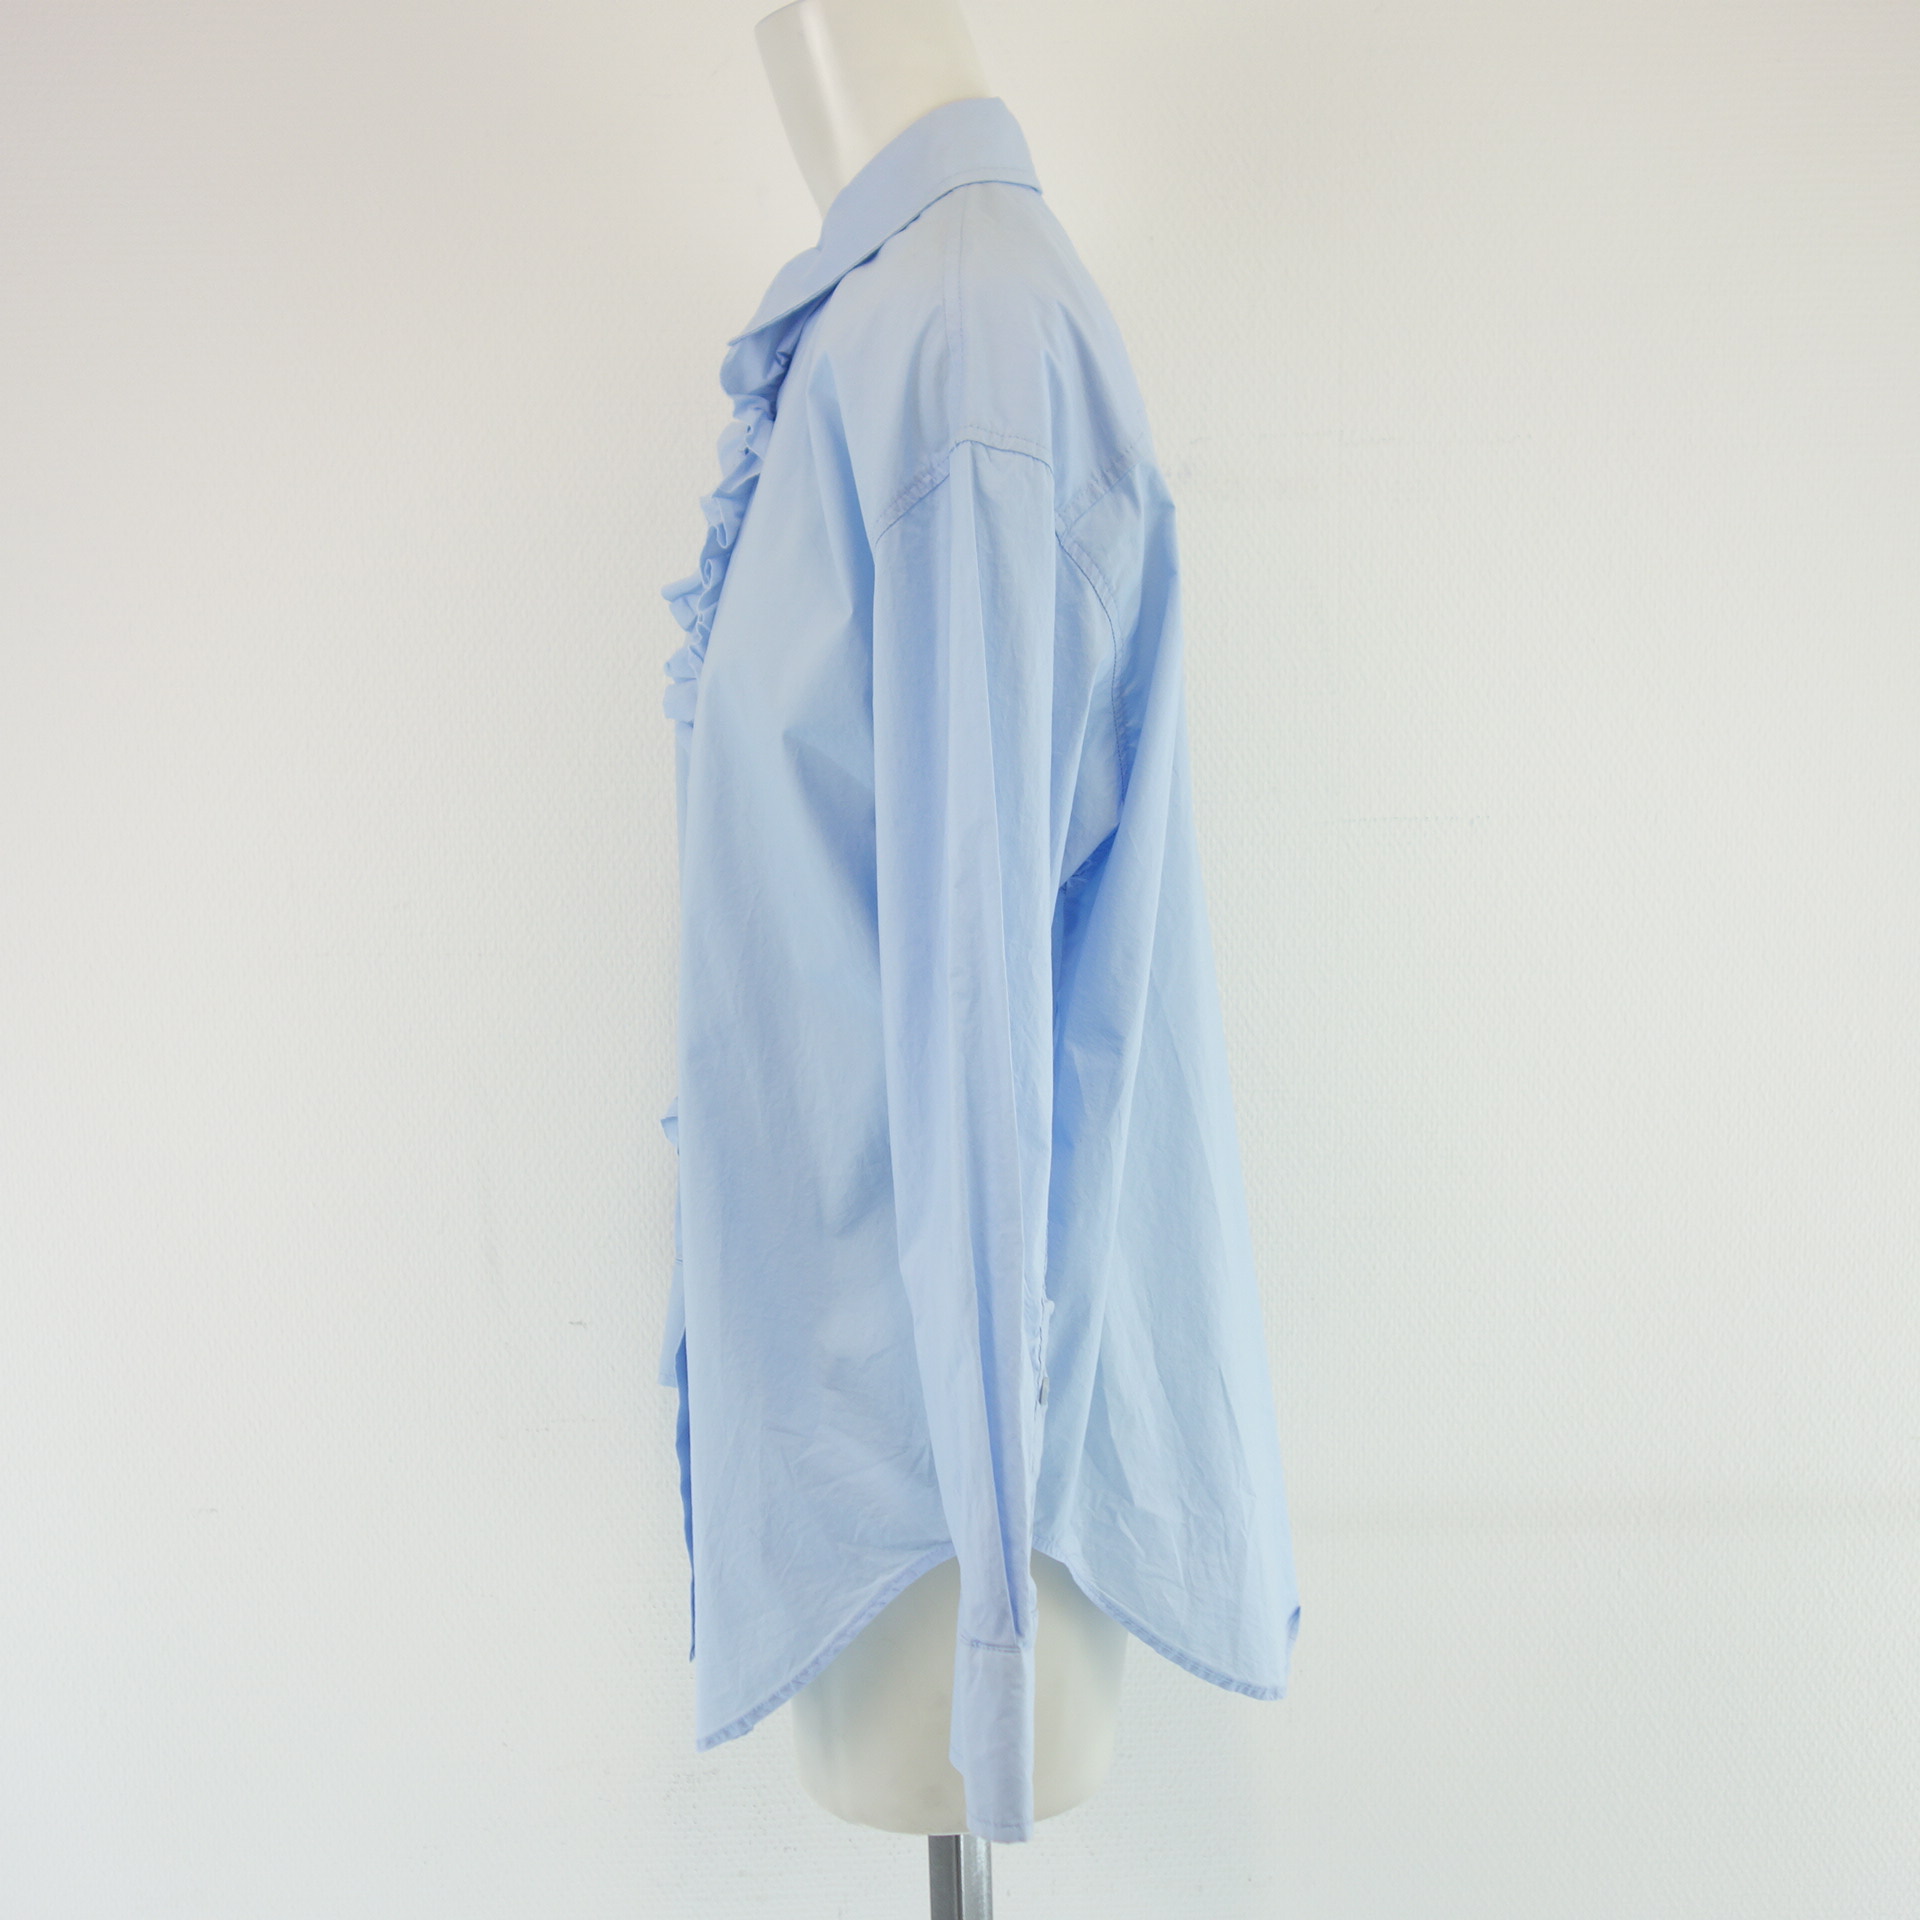 MARC AUREL Damen Bluse Tunika Oberteil Shirt Blau 100% Baumwolle Gr 38